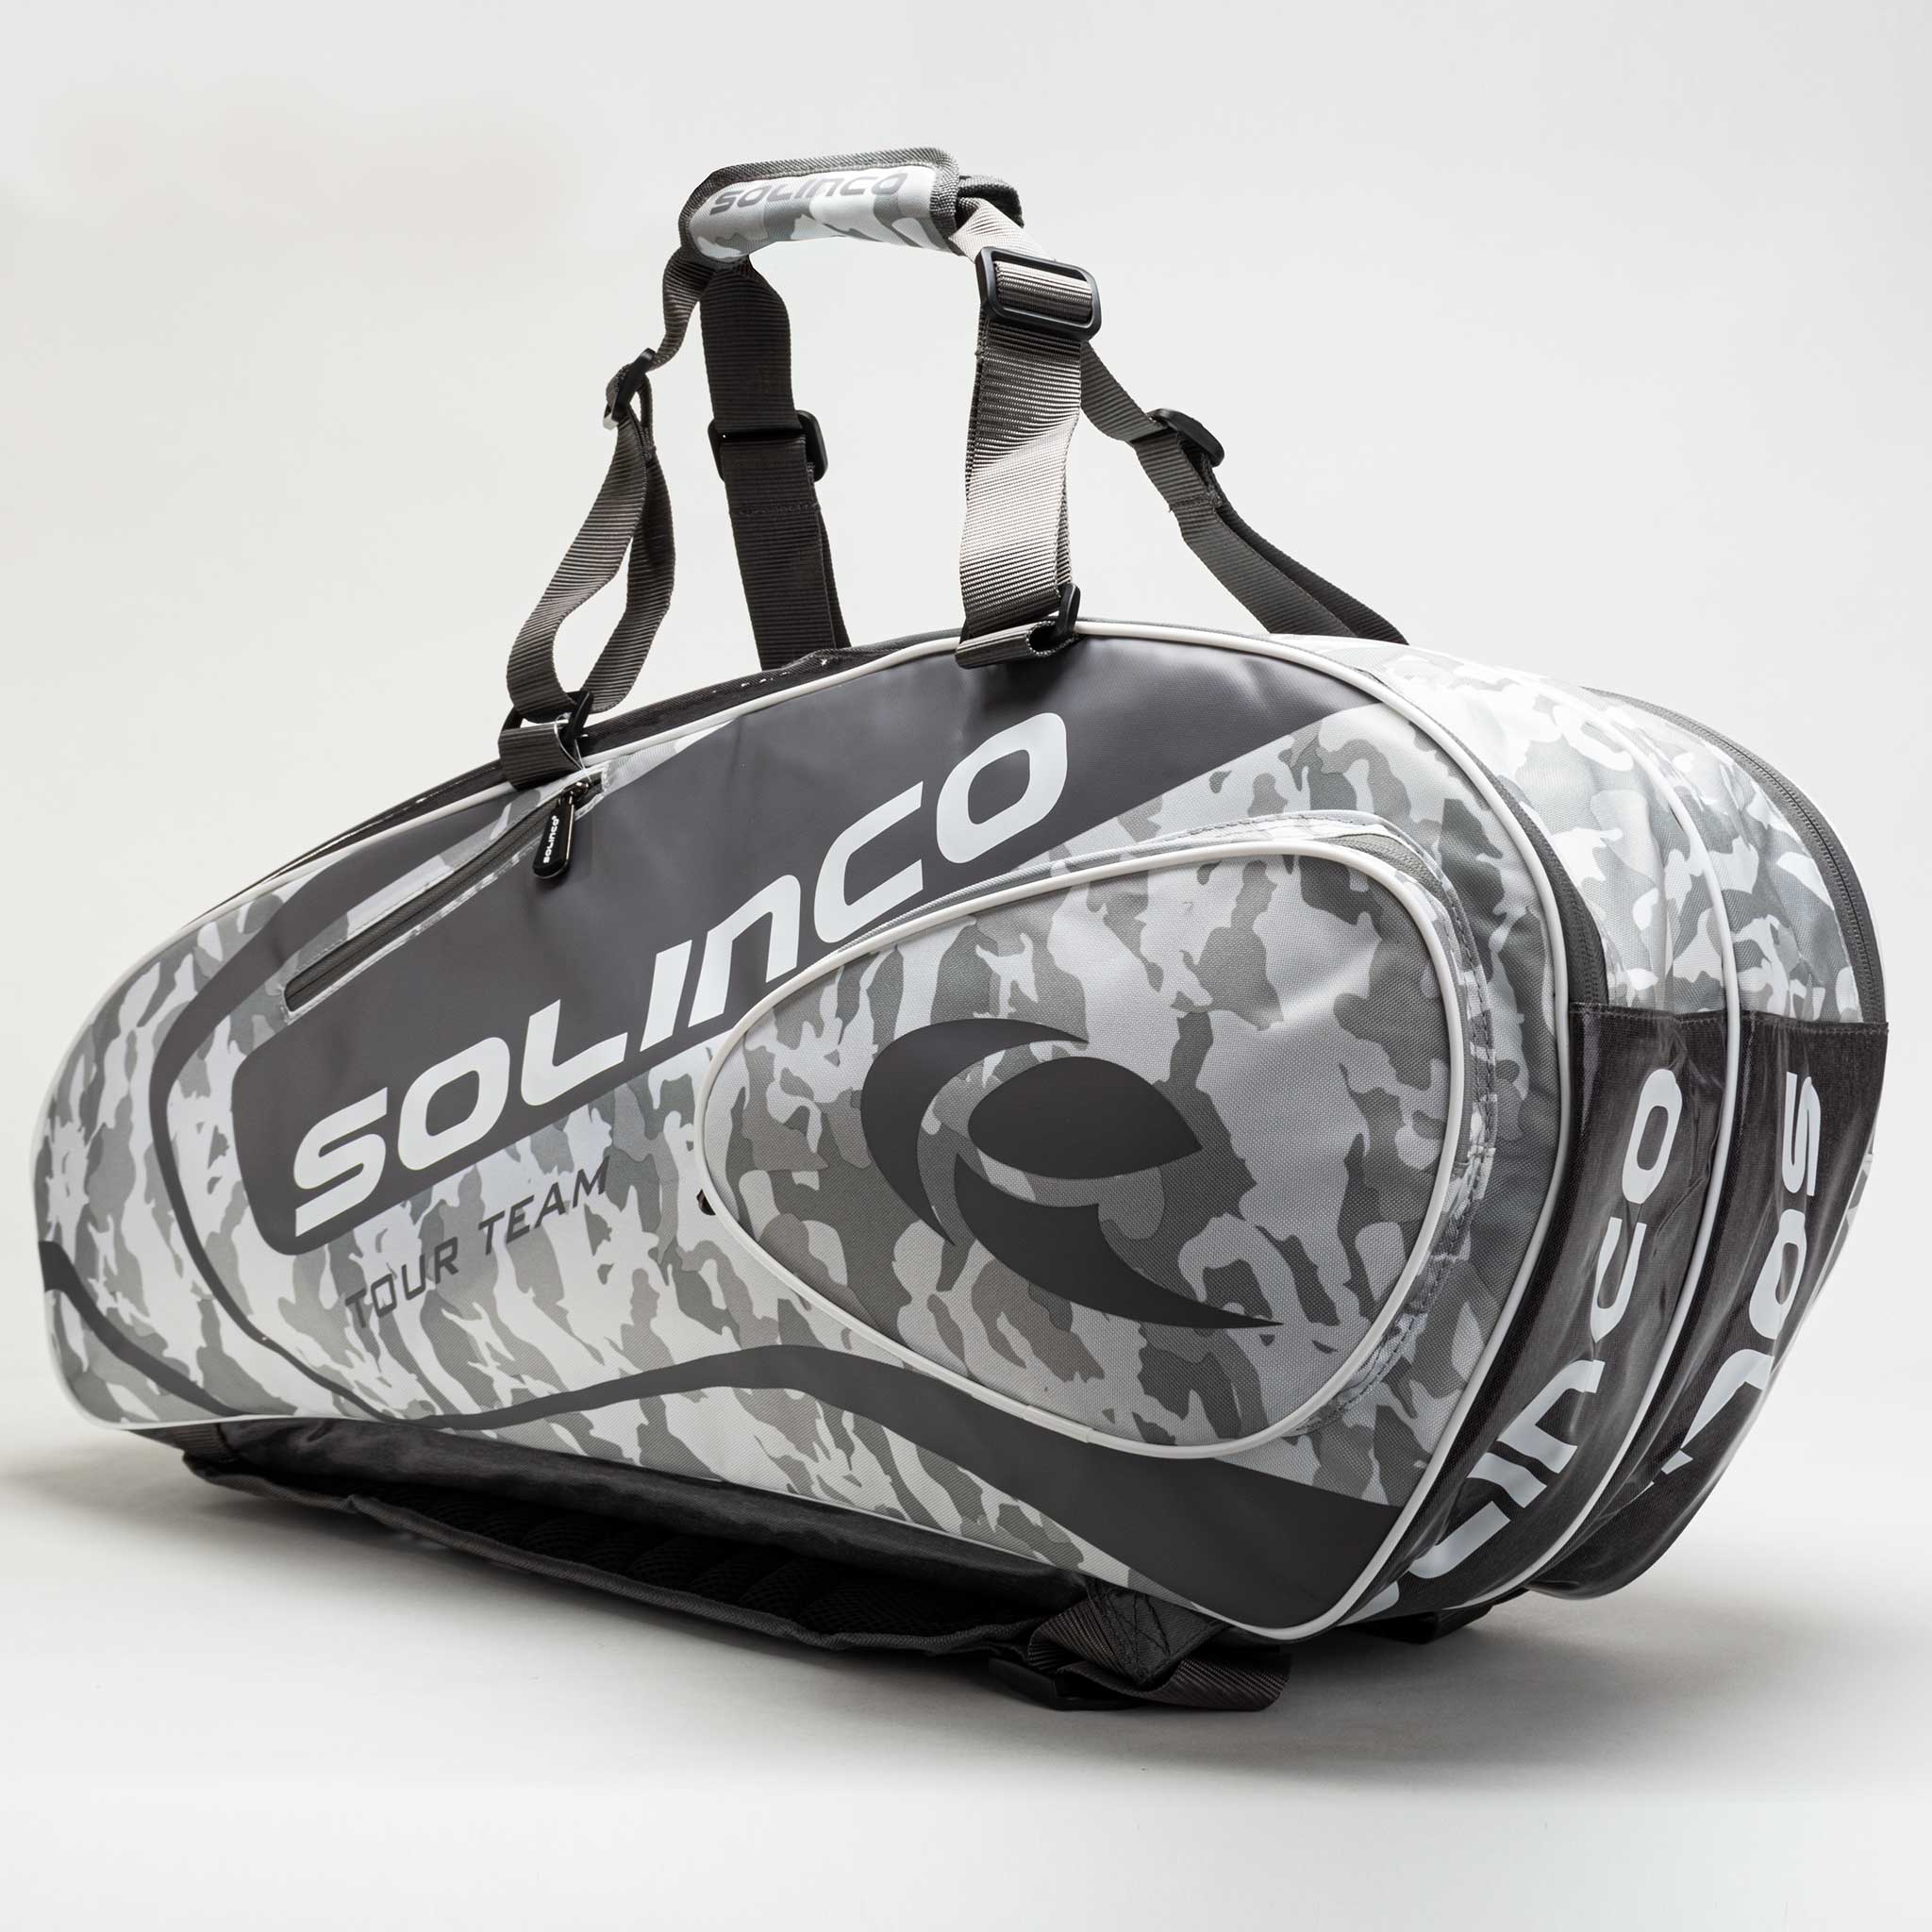 Solinco – Holabird Sports